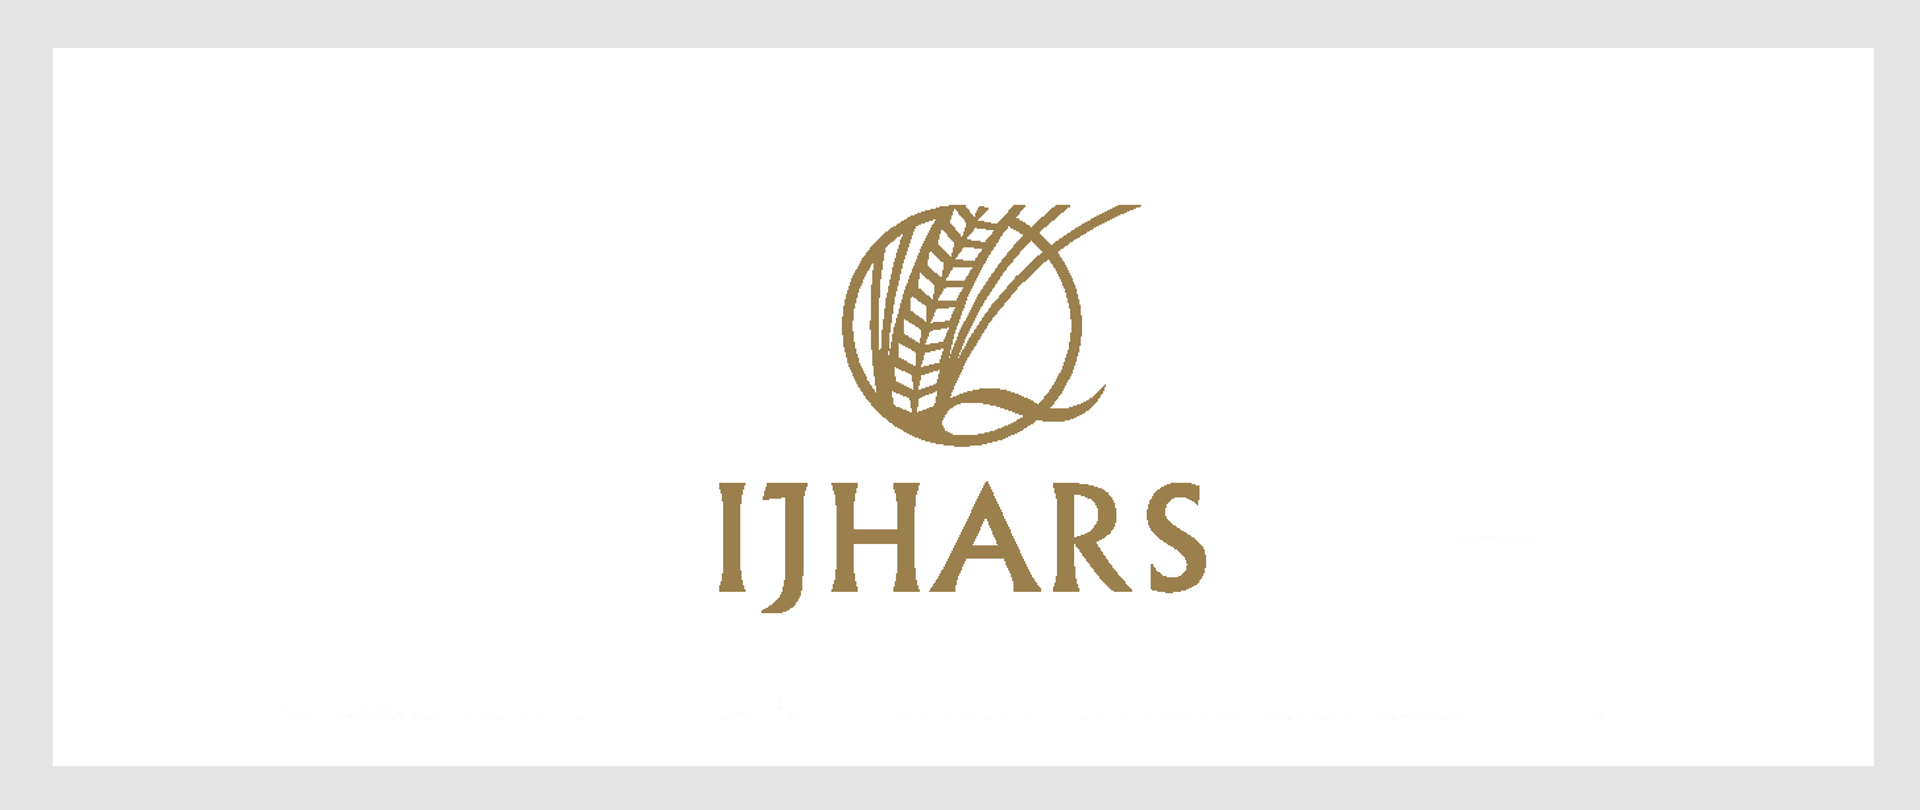 Logo Inspekcji Jakości Handlowej Artykułów Rolno-Spożywczych. W górnej części na środku, znajduje się łan zboża w okręgu, poniżej znajduje się skrótowiec IJHARS.